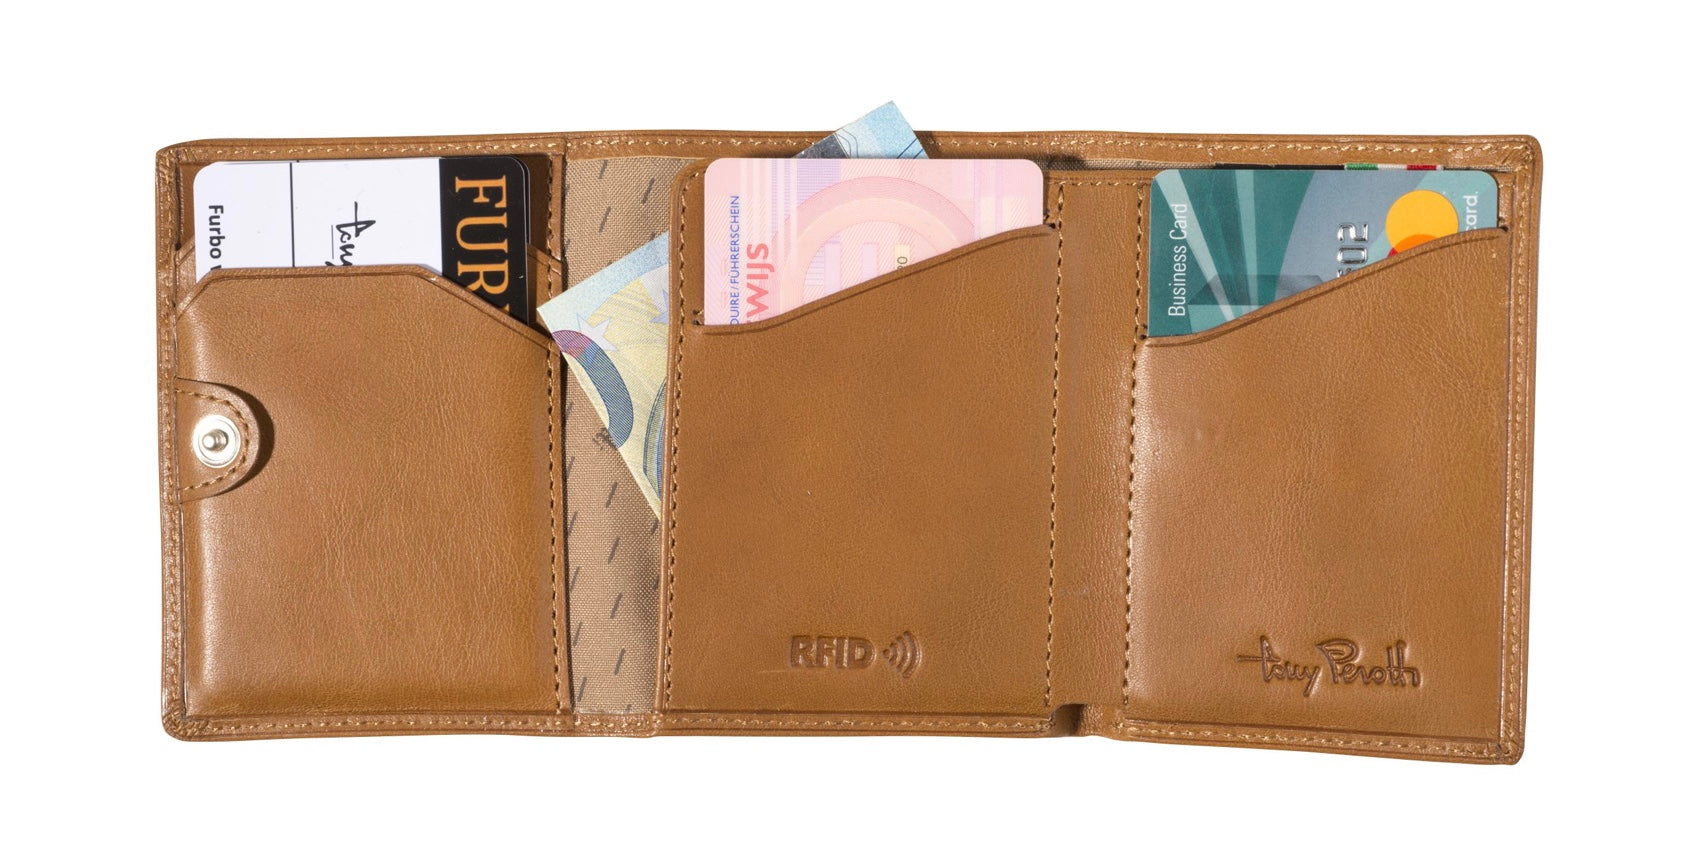 Leren Mini RFID Kaarthouder met kleingeld-vakje *Speciale Prijs*